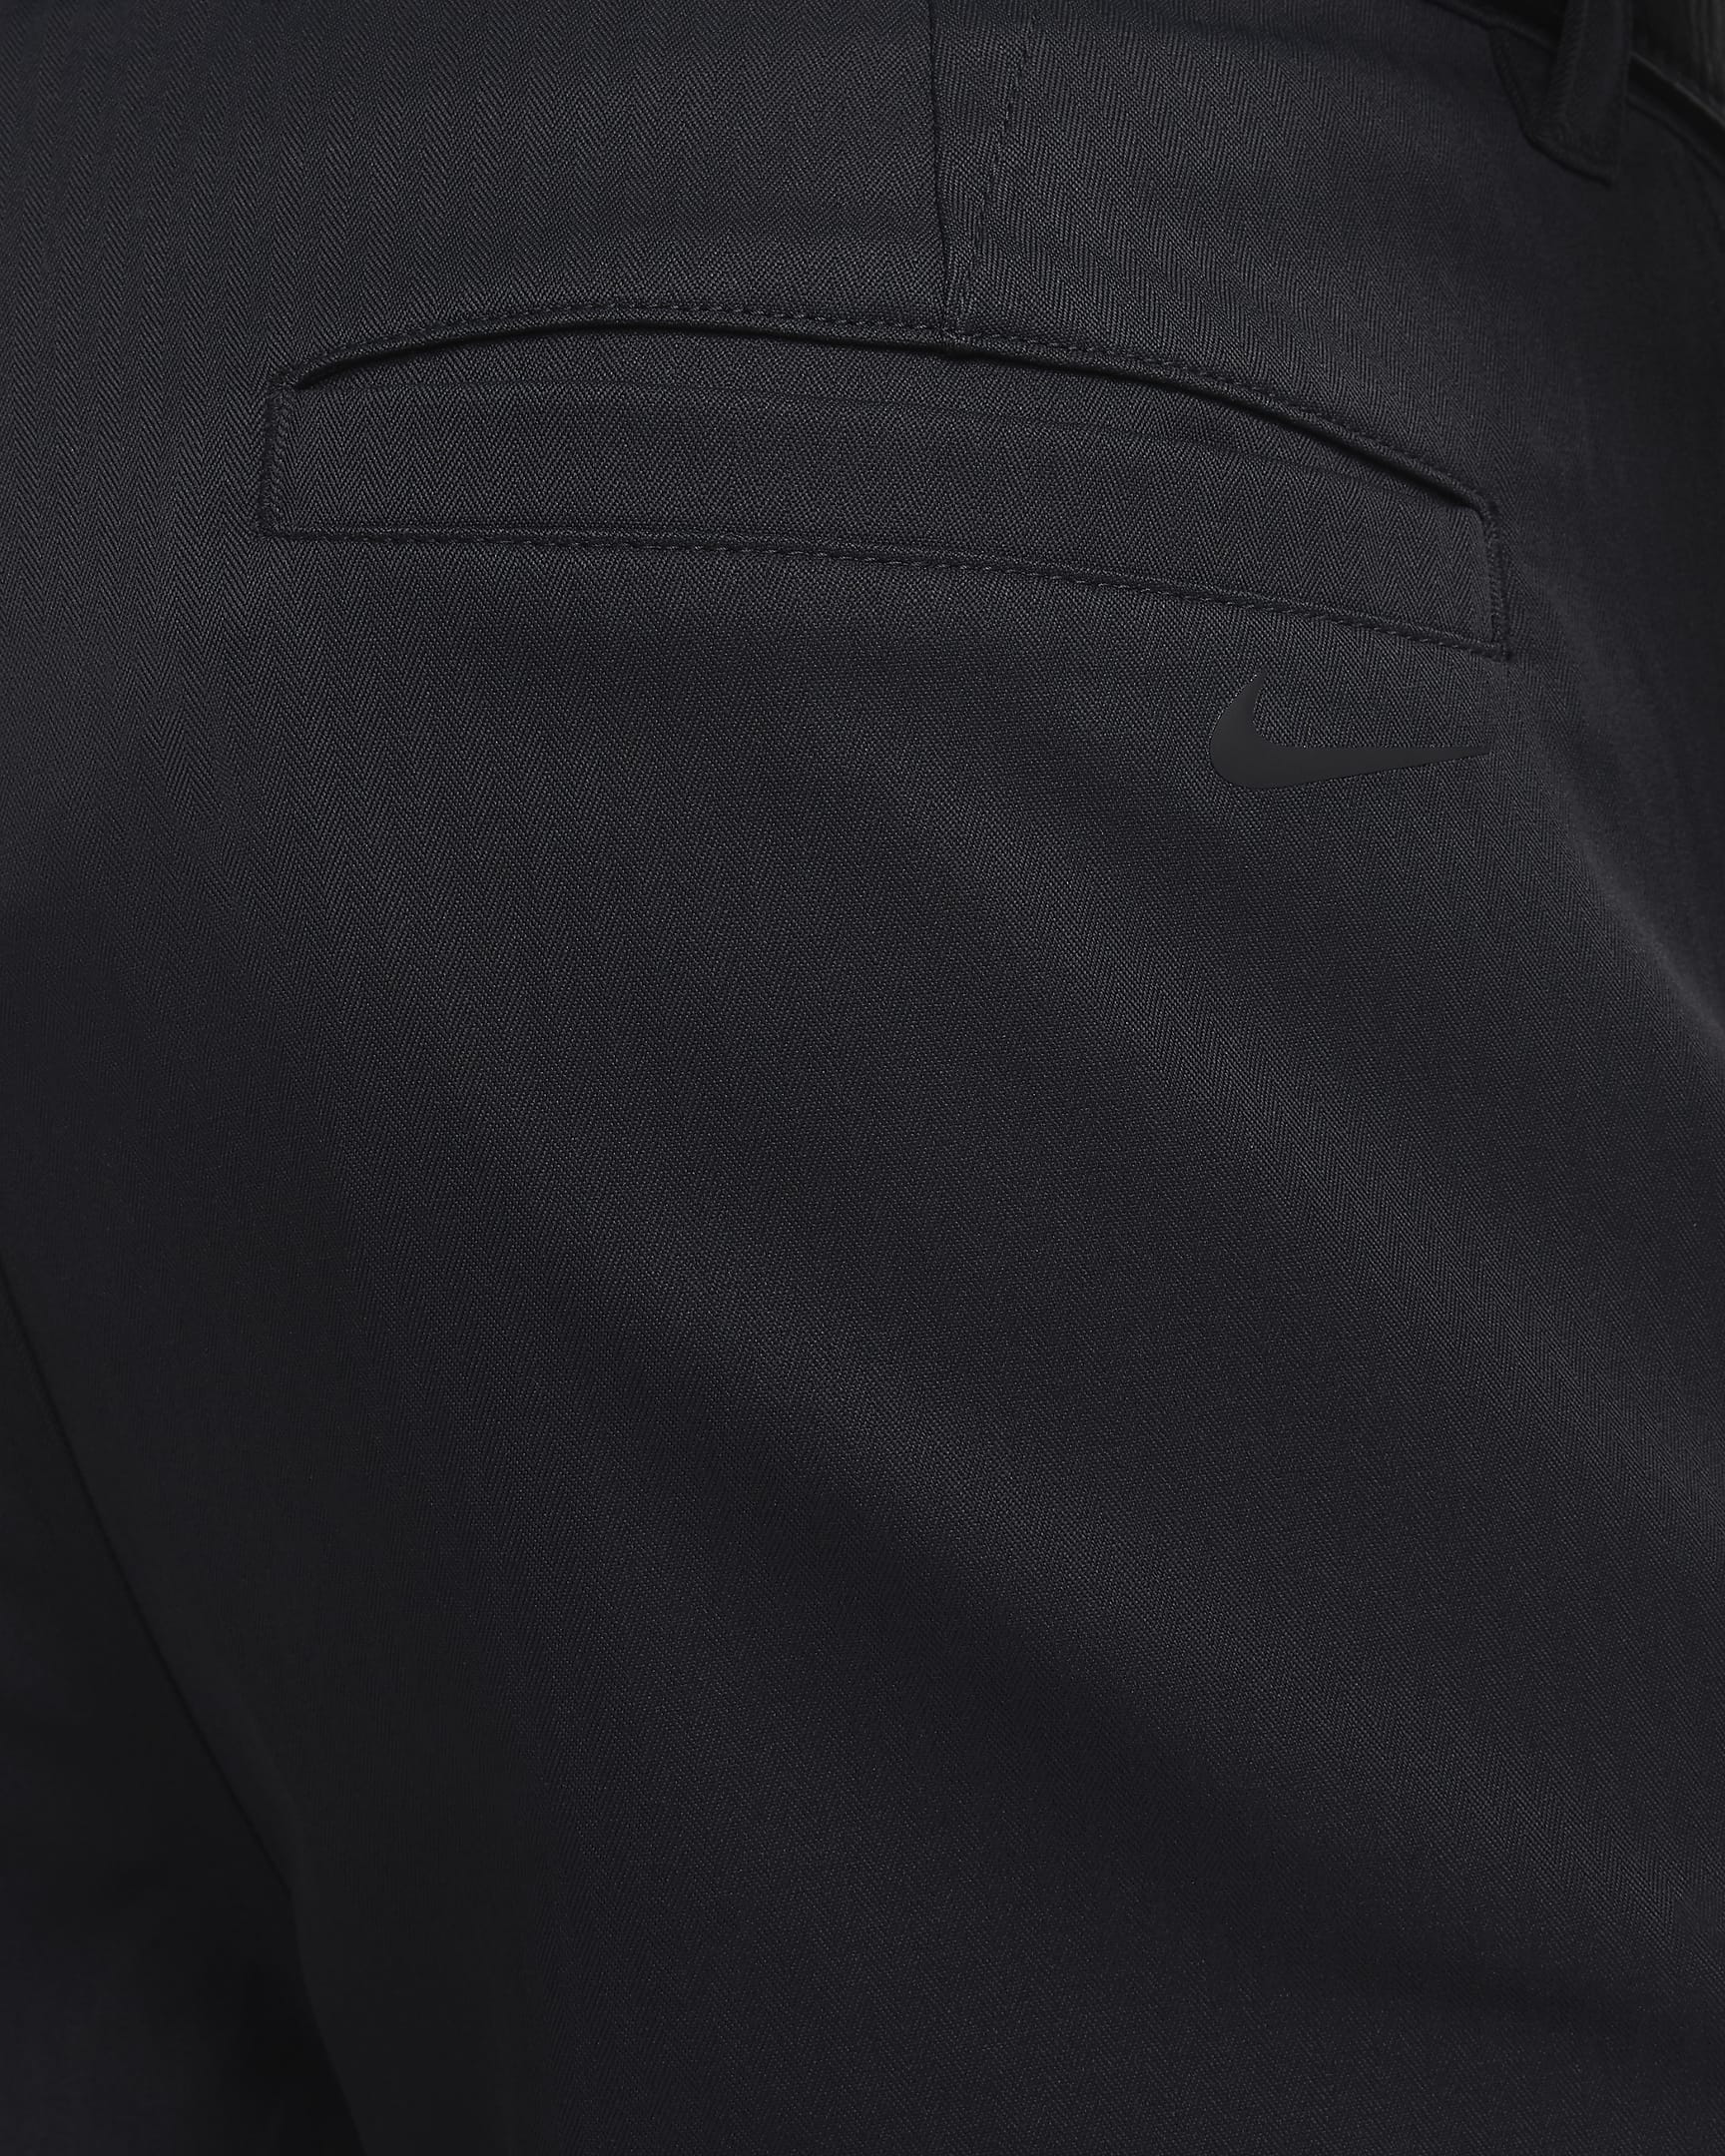 Nike Tour Repel Men's Chino Slim Golf Trousers. Nike UK